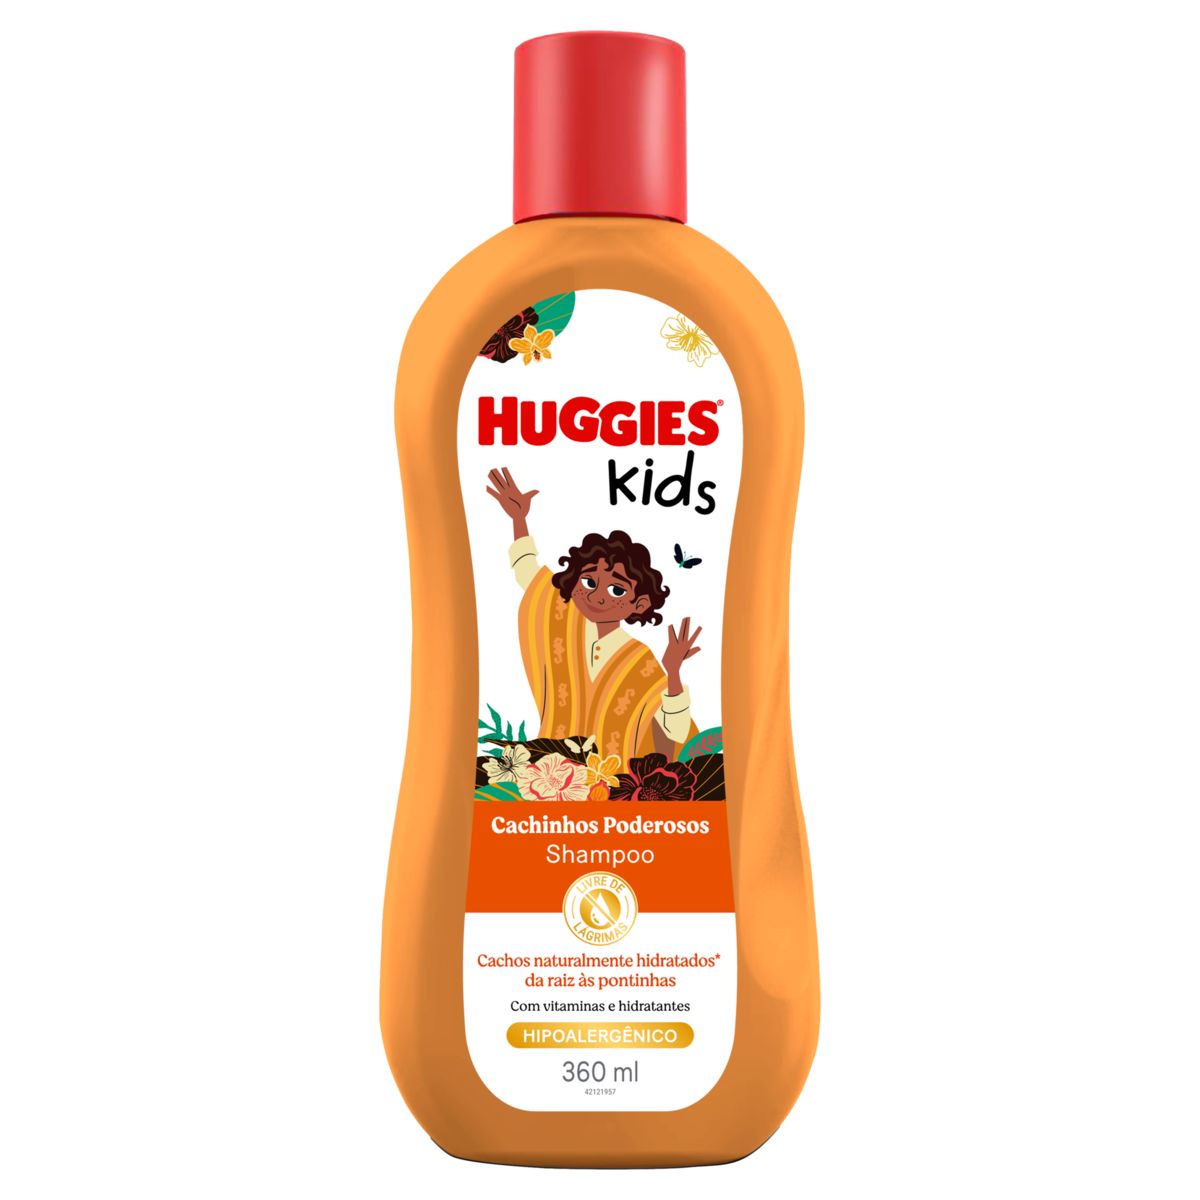 Shampoo Huggies Kids Cachinhos Poderosos Frasco 360ml